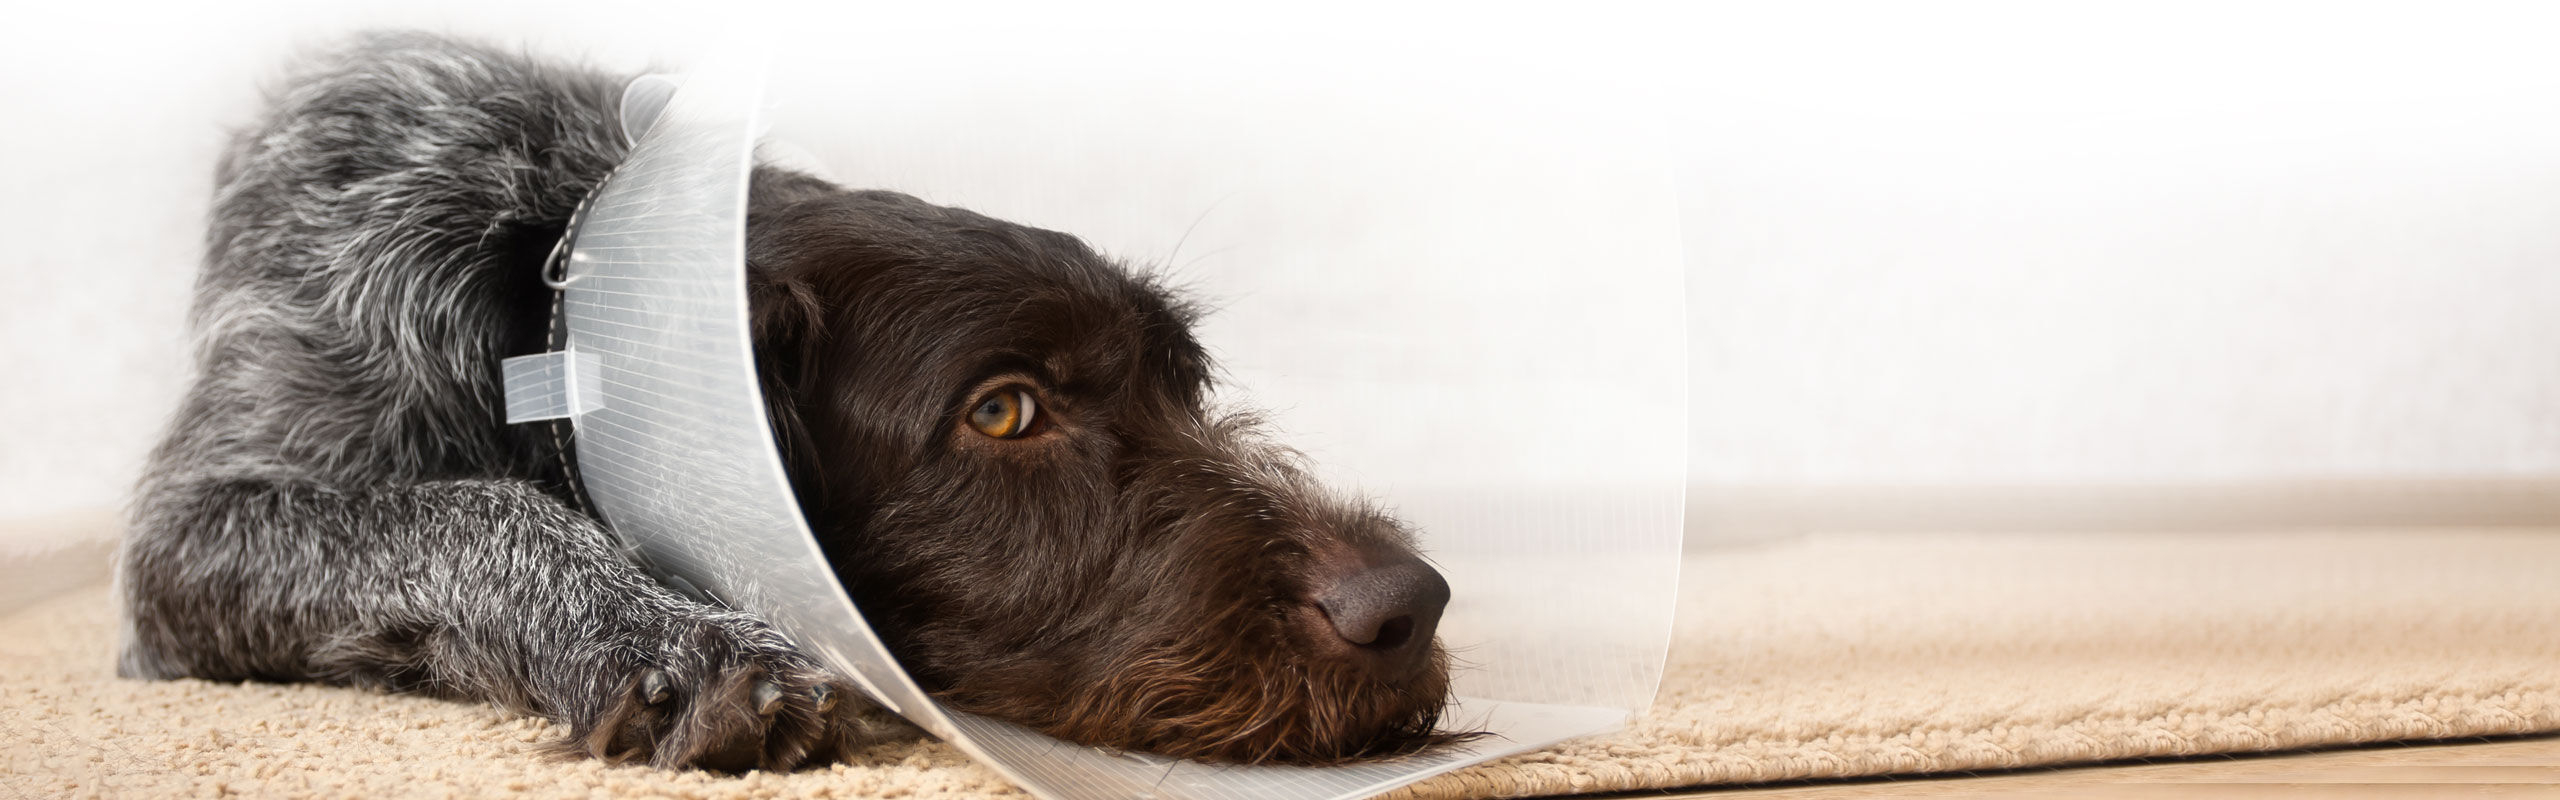 Wundschutz Schutzkragen OP Hund